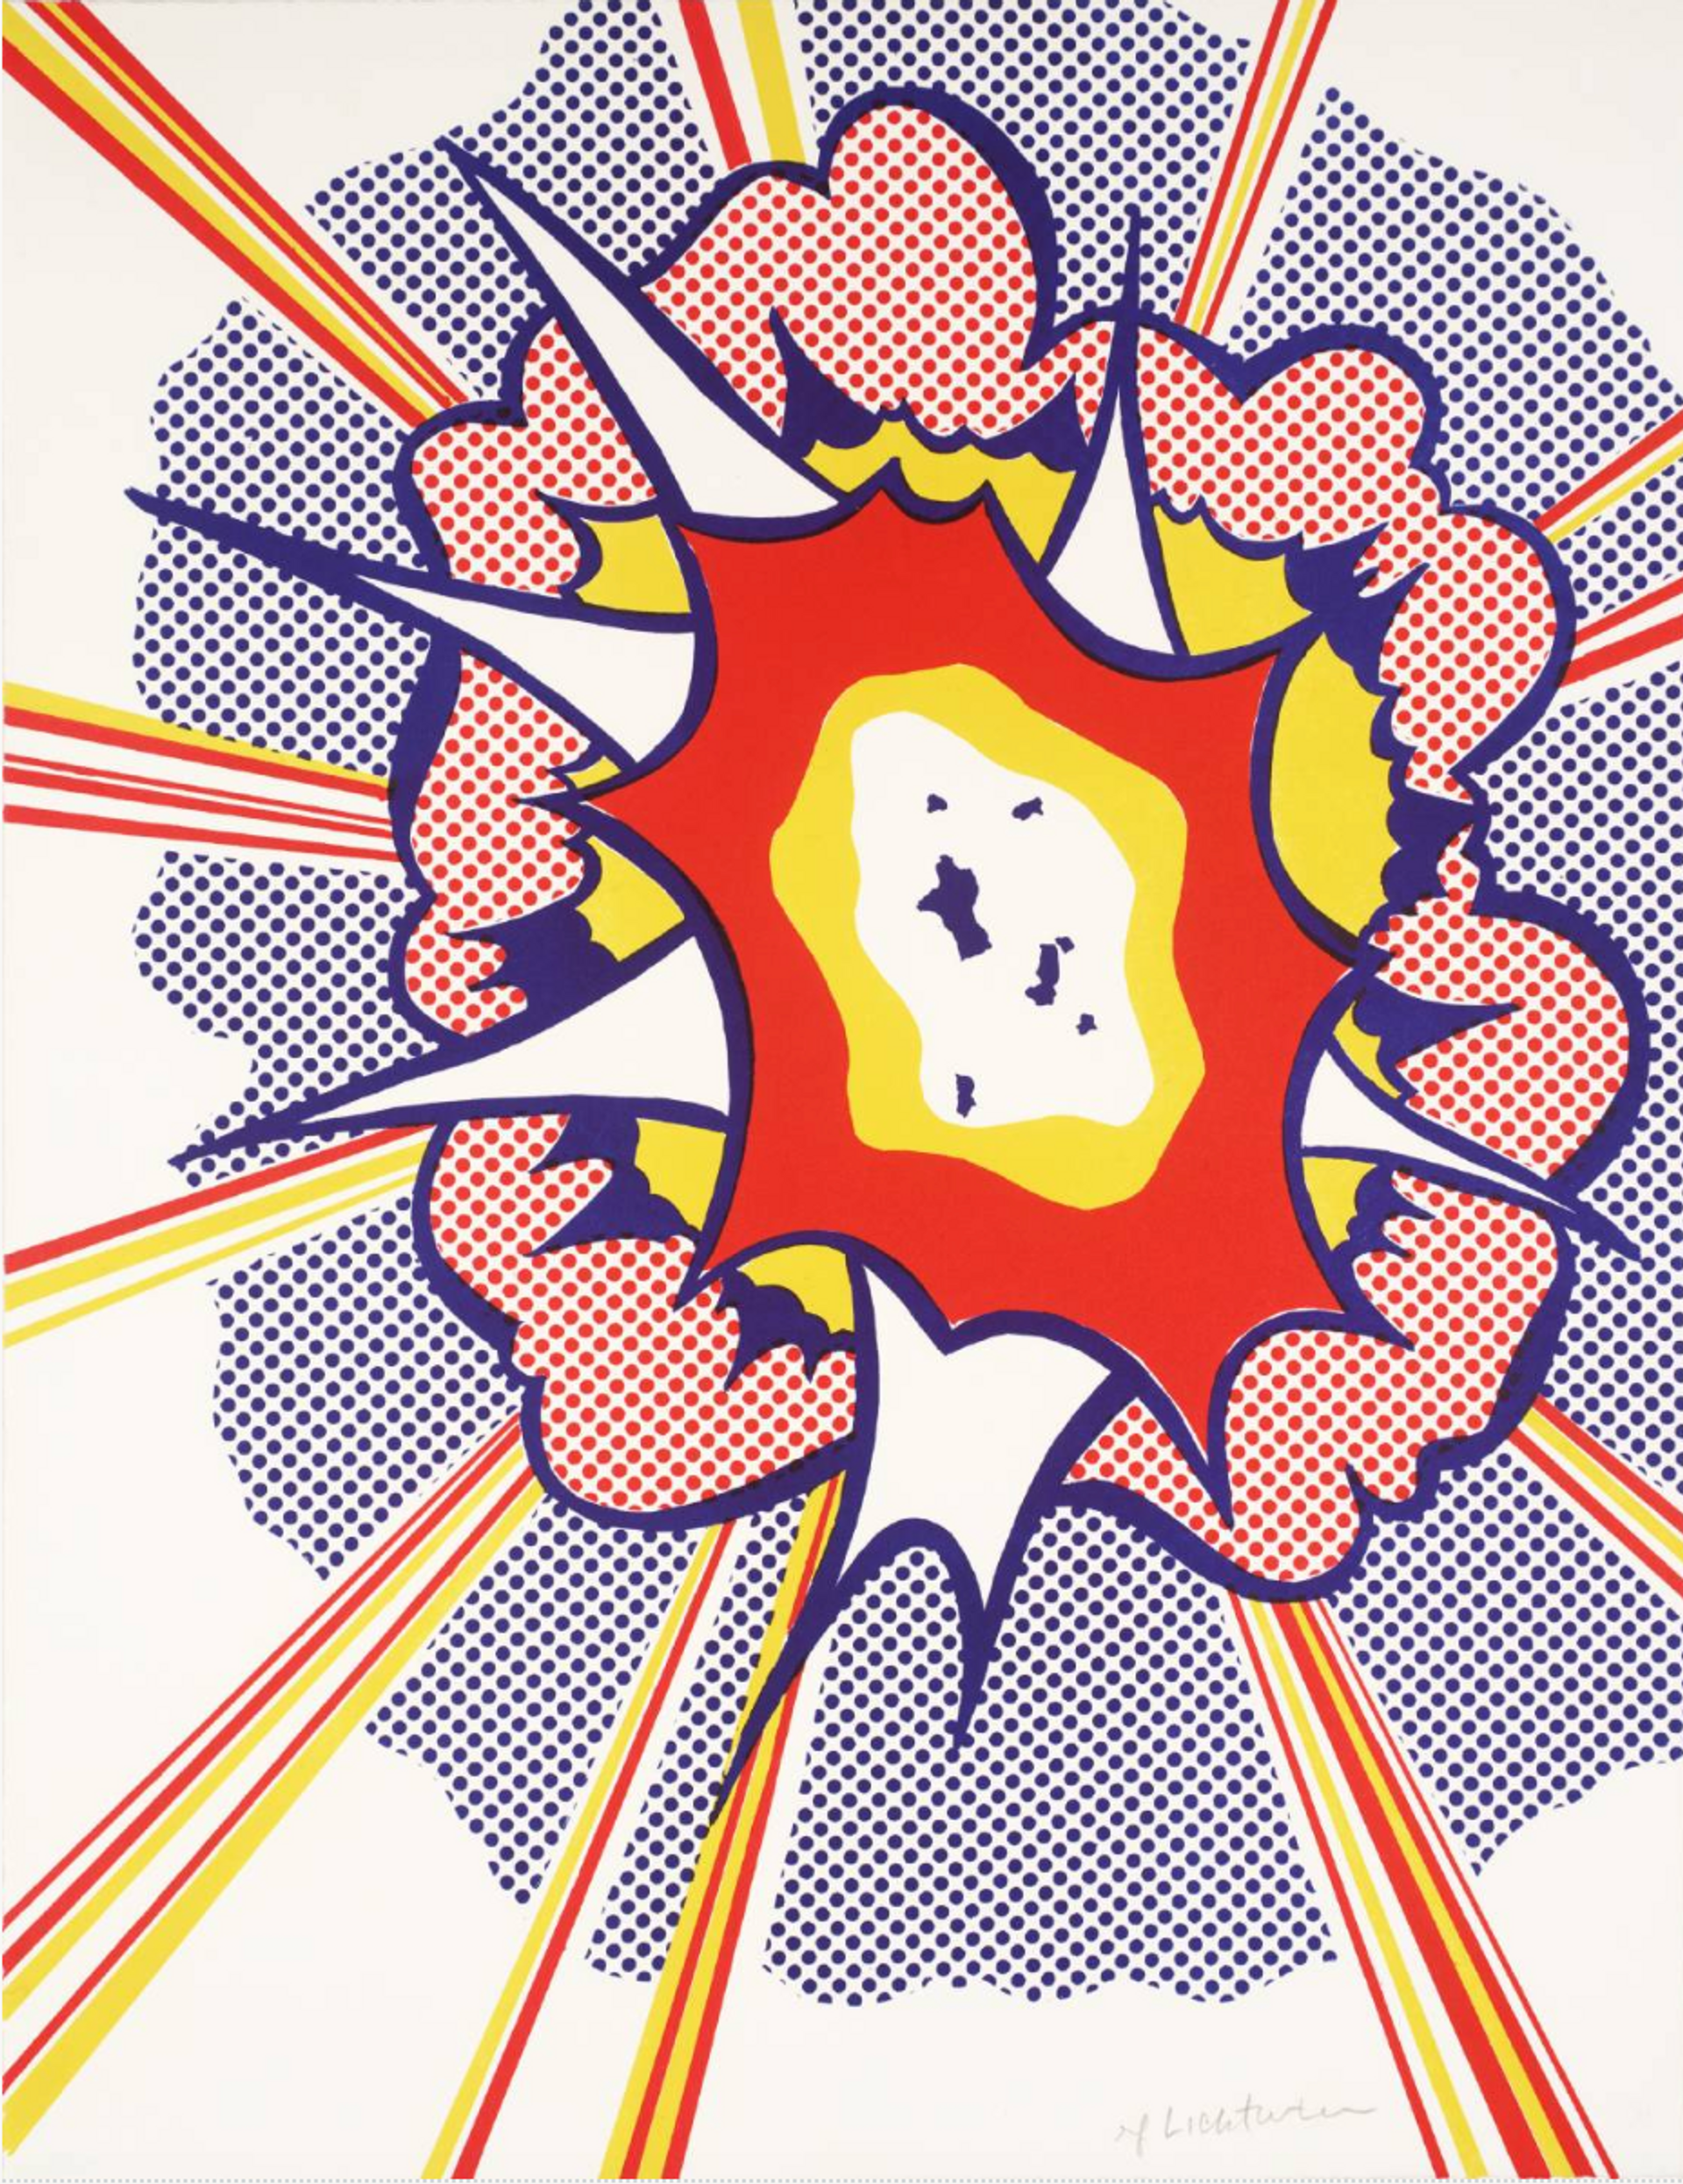 Explosion by Roy Lichtenstein